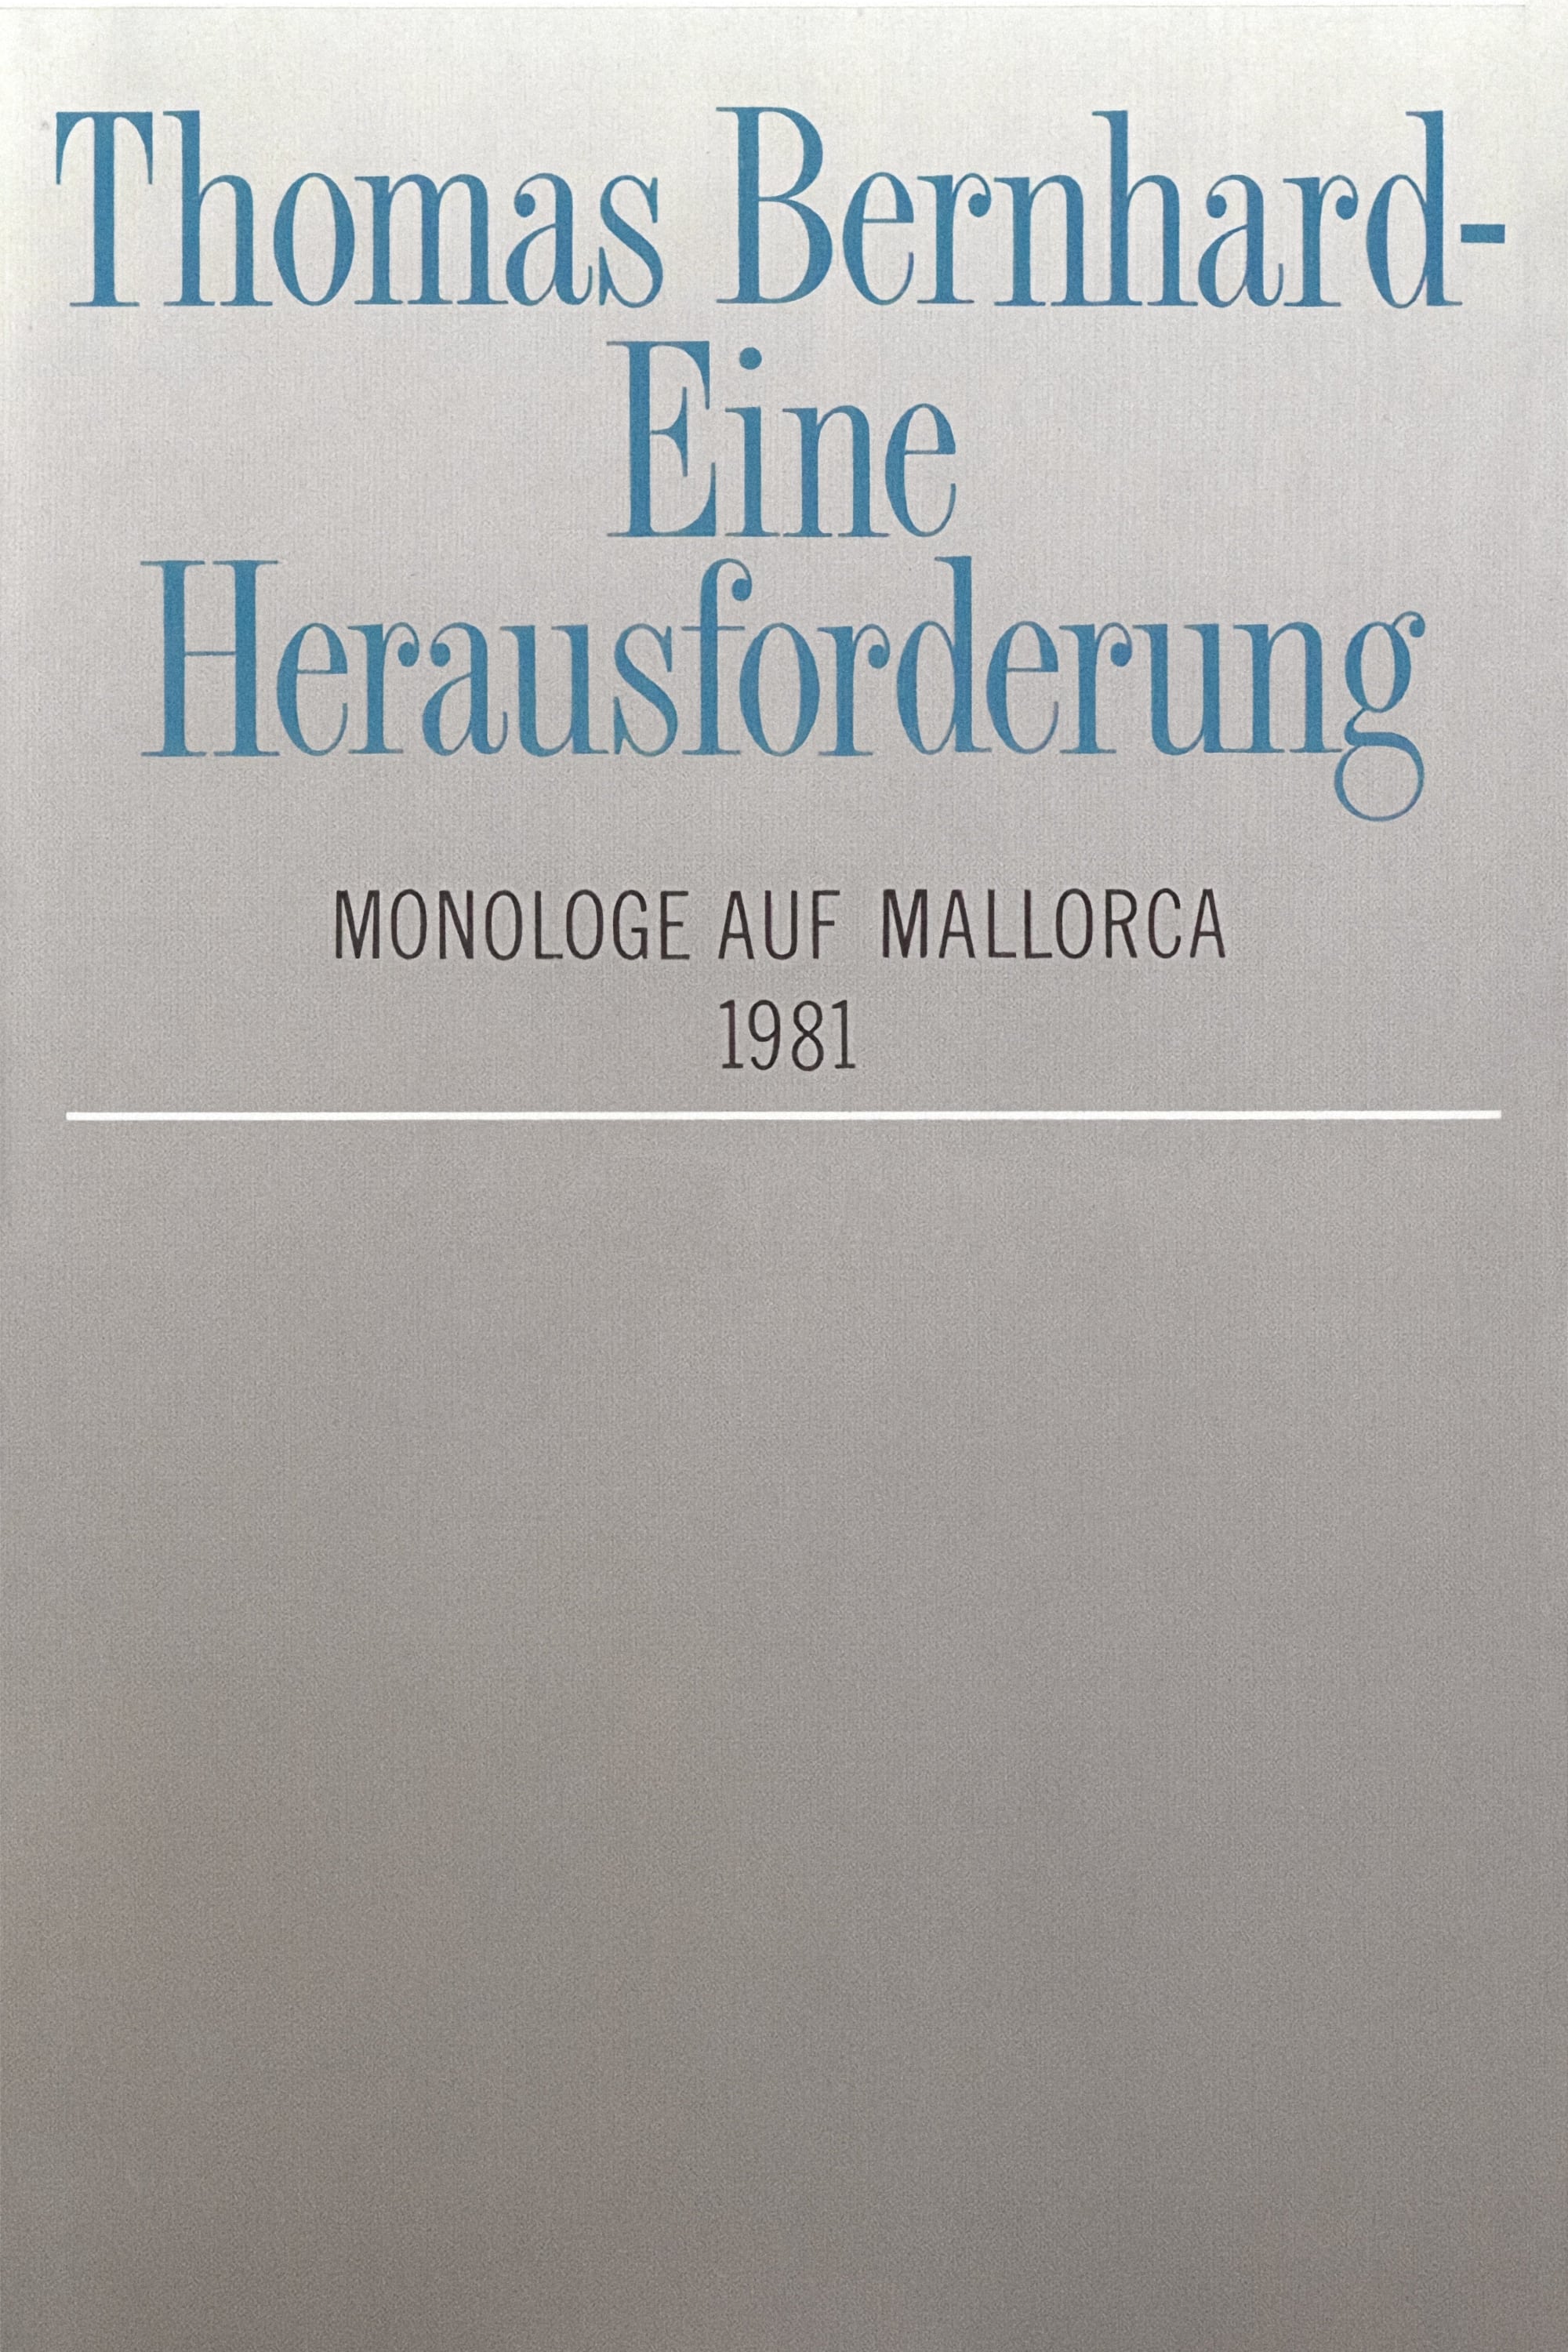 Thomas Bernhard – Eine Herausforderung. Monologe auf Mallorca